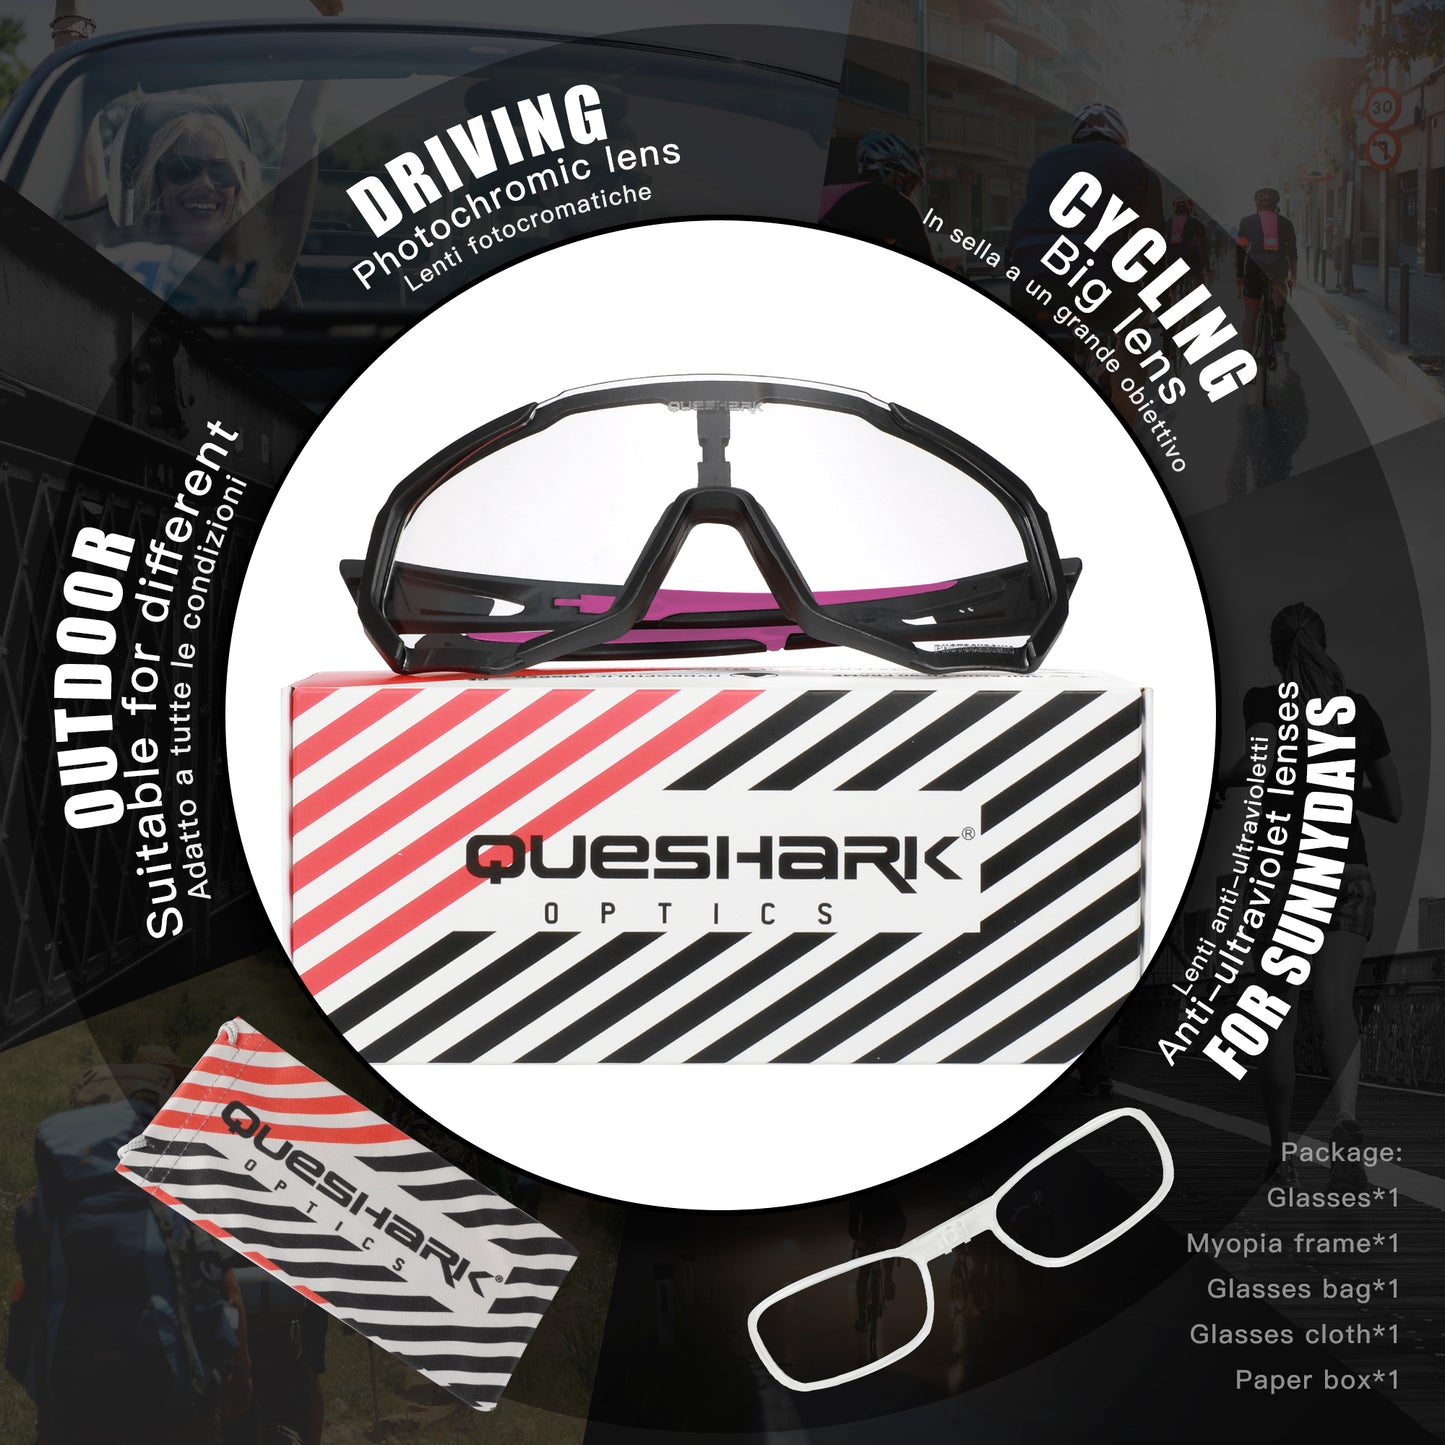 QE48 BS Queshark Occhiali da sole fotocromatici per uomo Donna Sicurezza Occhiali da ciclismo Protezione UV Sport all'aria aperta MTB Nero Rosa